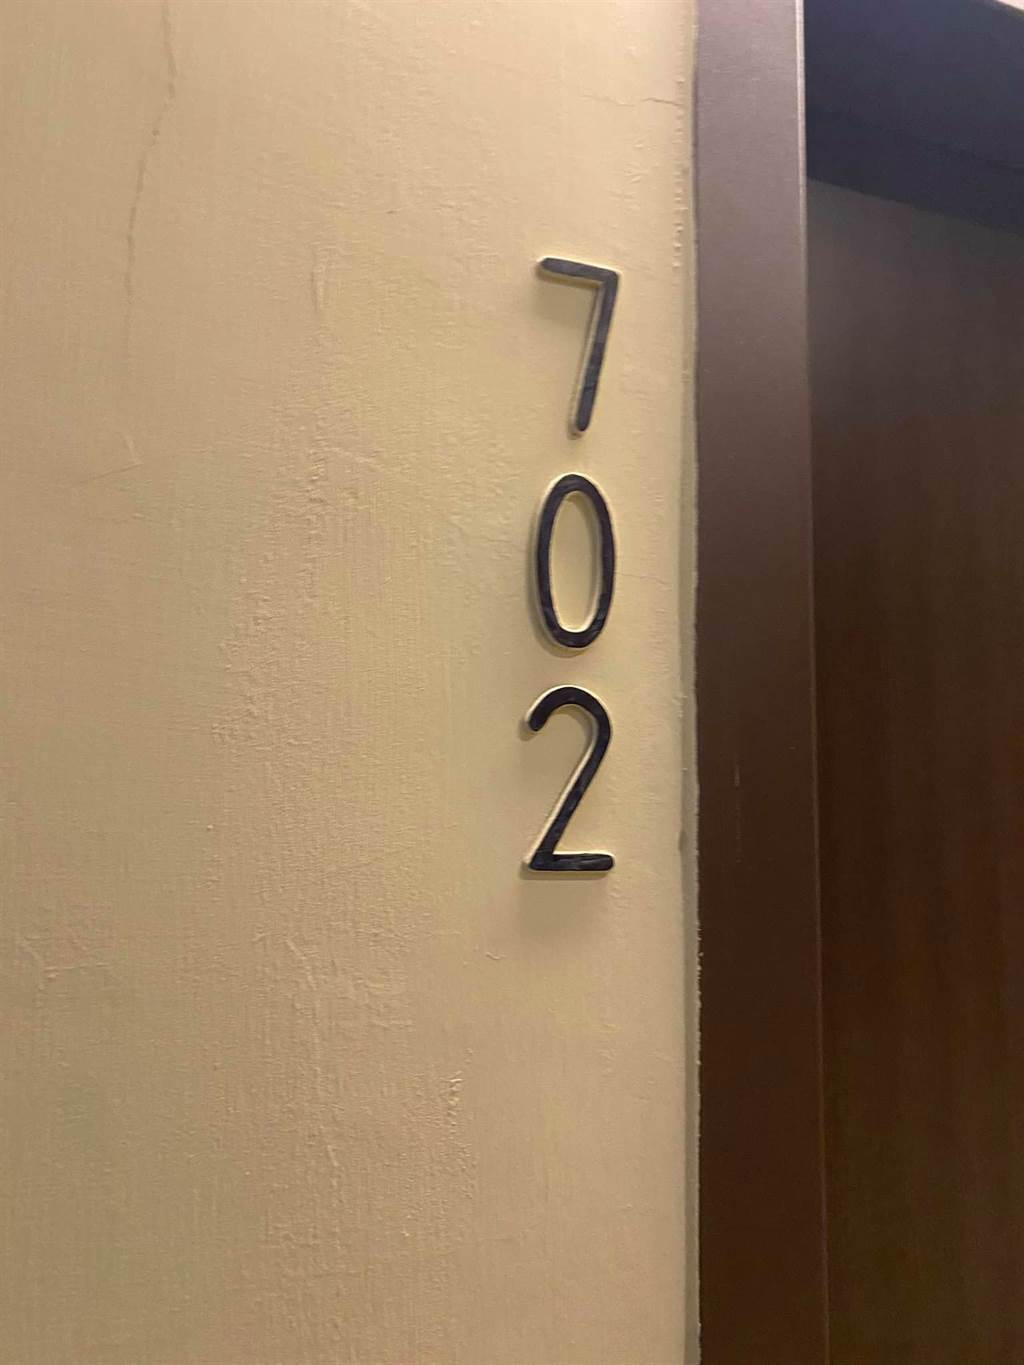 客人指定要送到「102號房」，卻沒有這間房？直到櫃檯小姐回應「妳們是702喔！」才真相大白。（摘自外送員的奇文怪事）